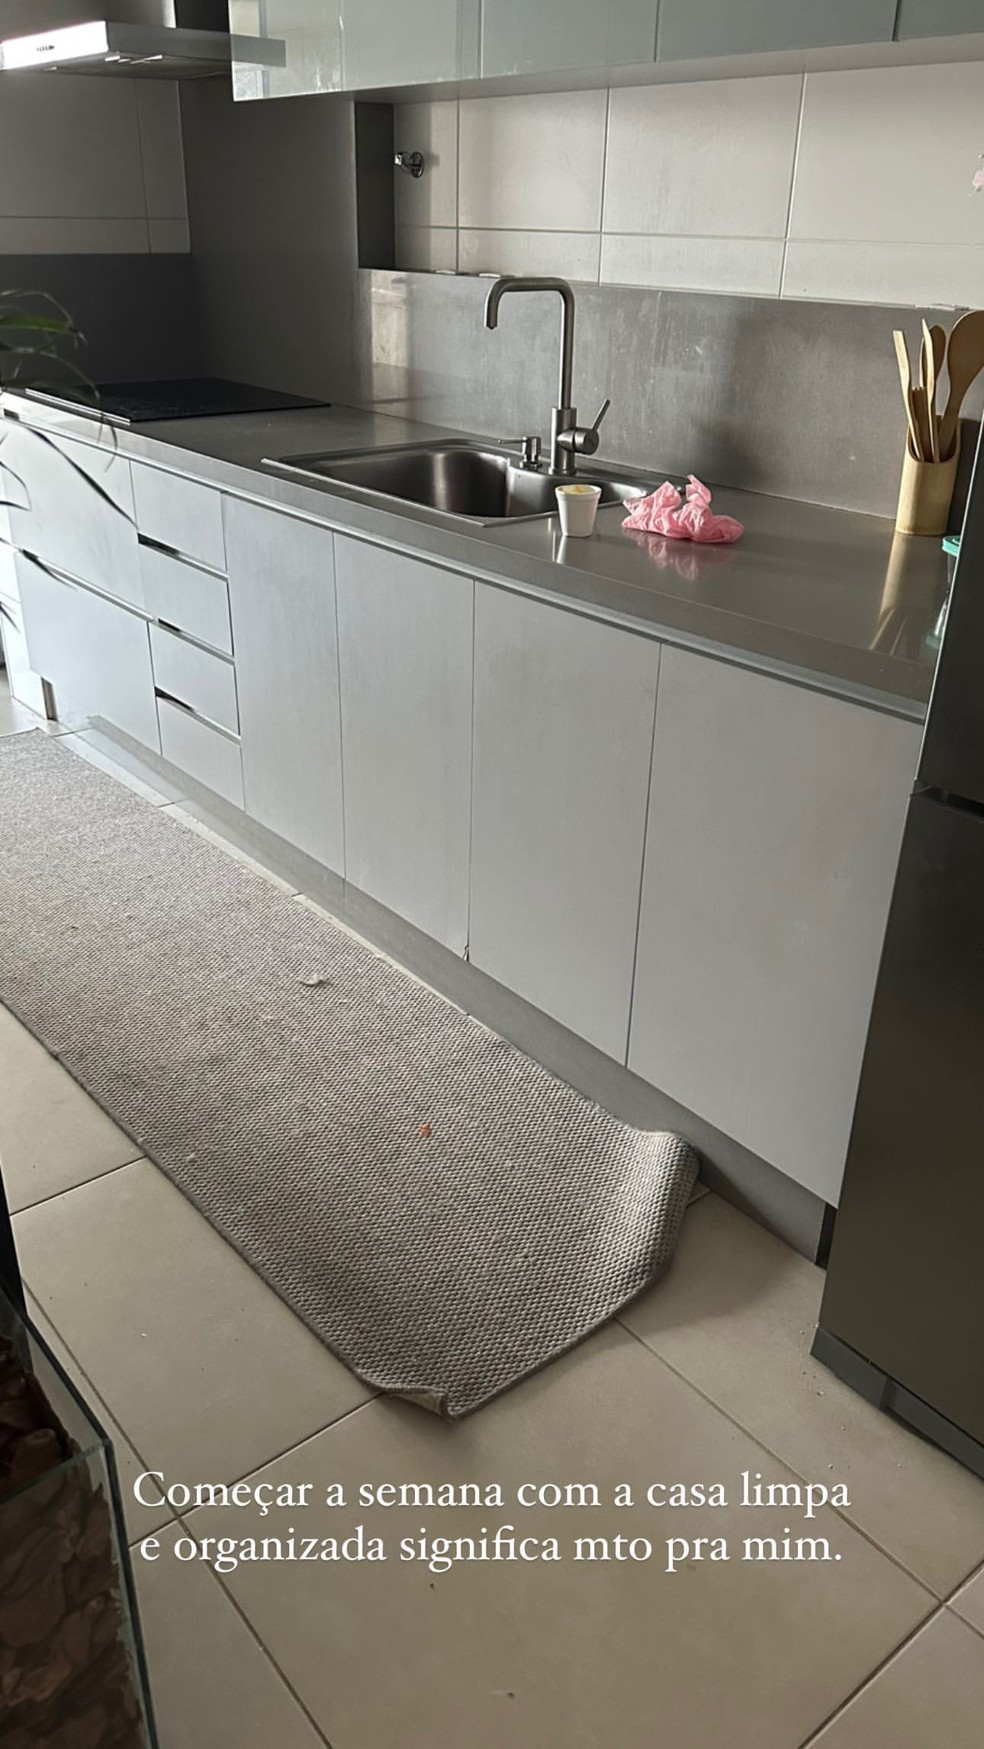 Maria Lina mostra antes e depois de limpar e arrumar seu apartamento — Foto: Instagram